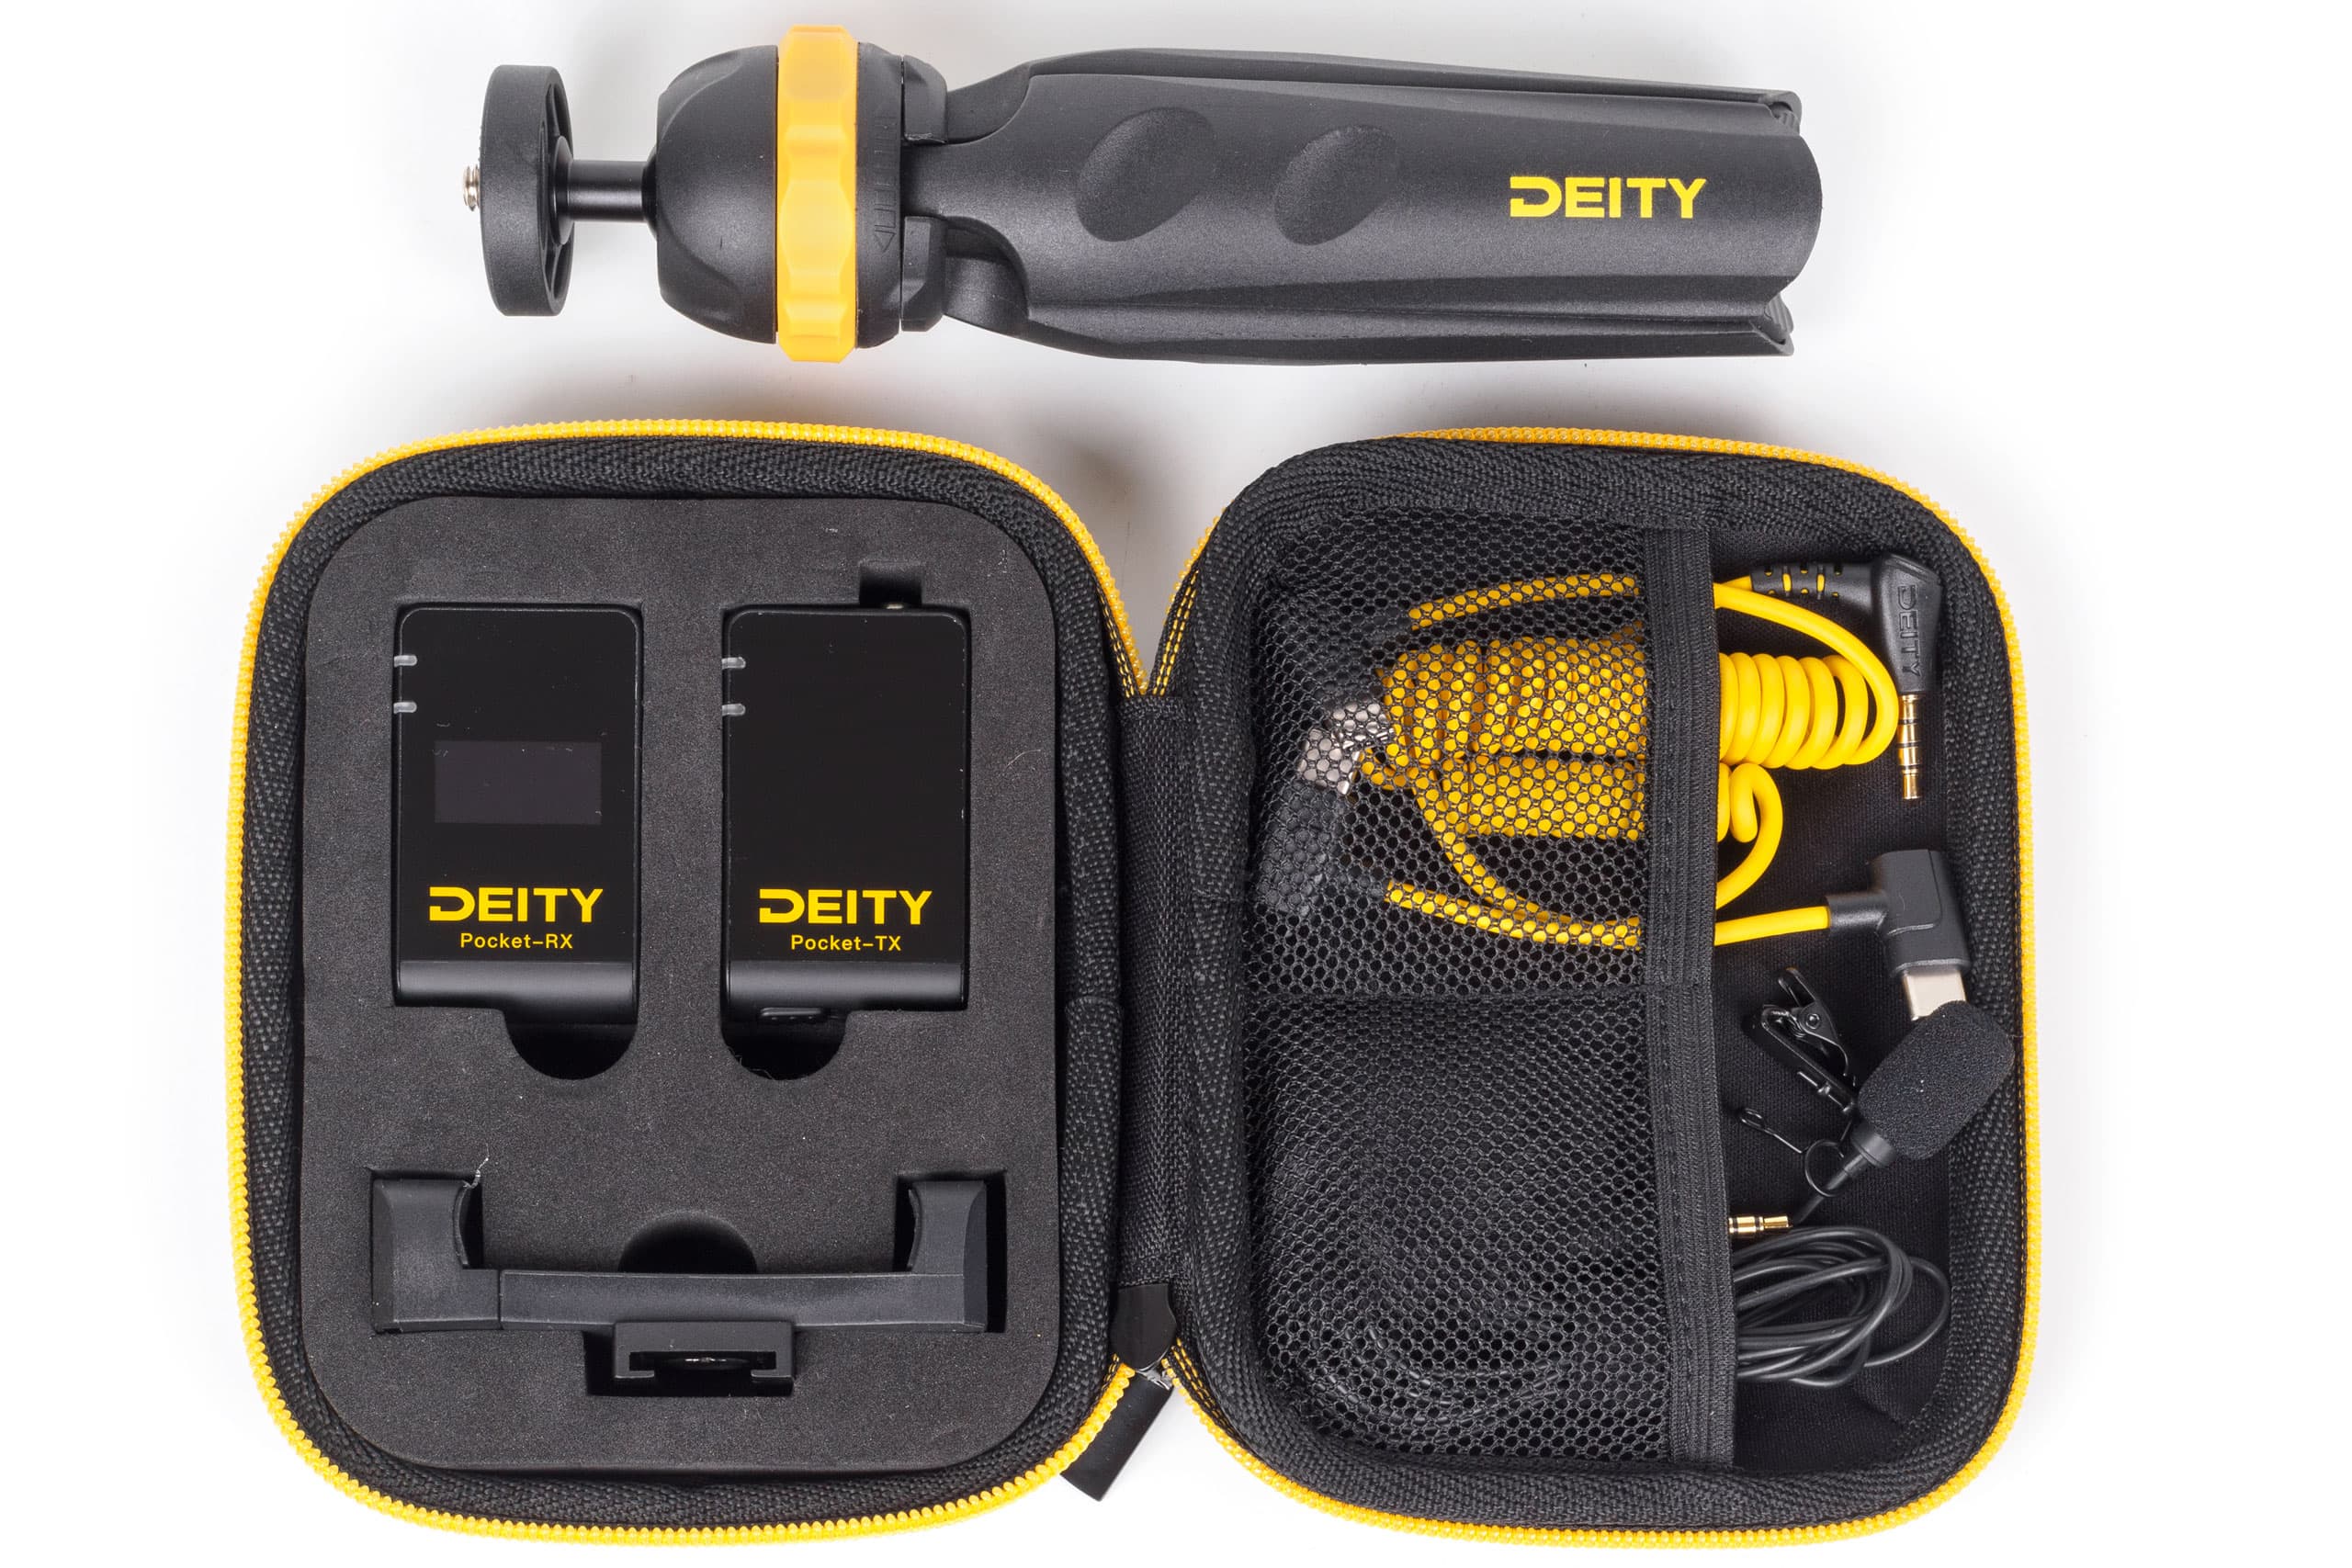 Deity Pocket Wireless Mobile Kit in its case